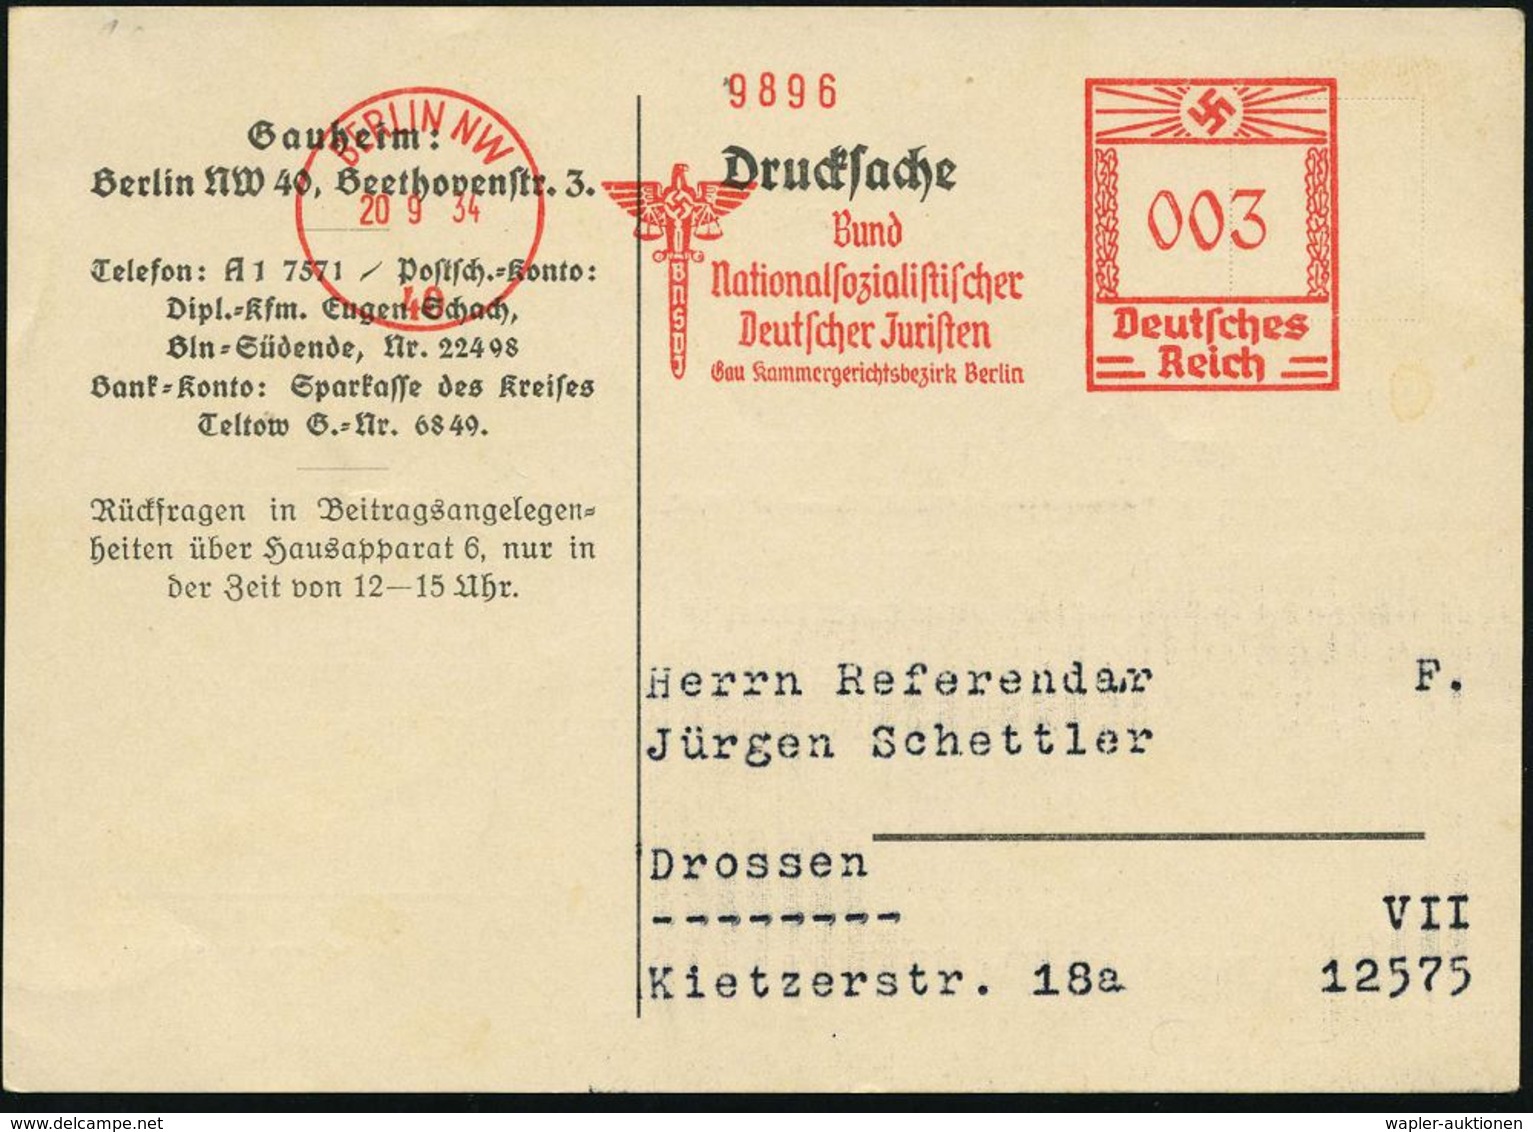 JUSTIZ / STRAFVOLLZUG / GEFÄNGNIS : BERLIN NW/ 40/ BNSDJ/ Bund/ Nationalsozialistischer/ Deutscher Juristen.. 1934 (20.9 - Polizei - Gendarmerie